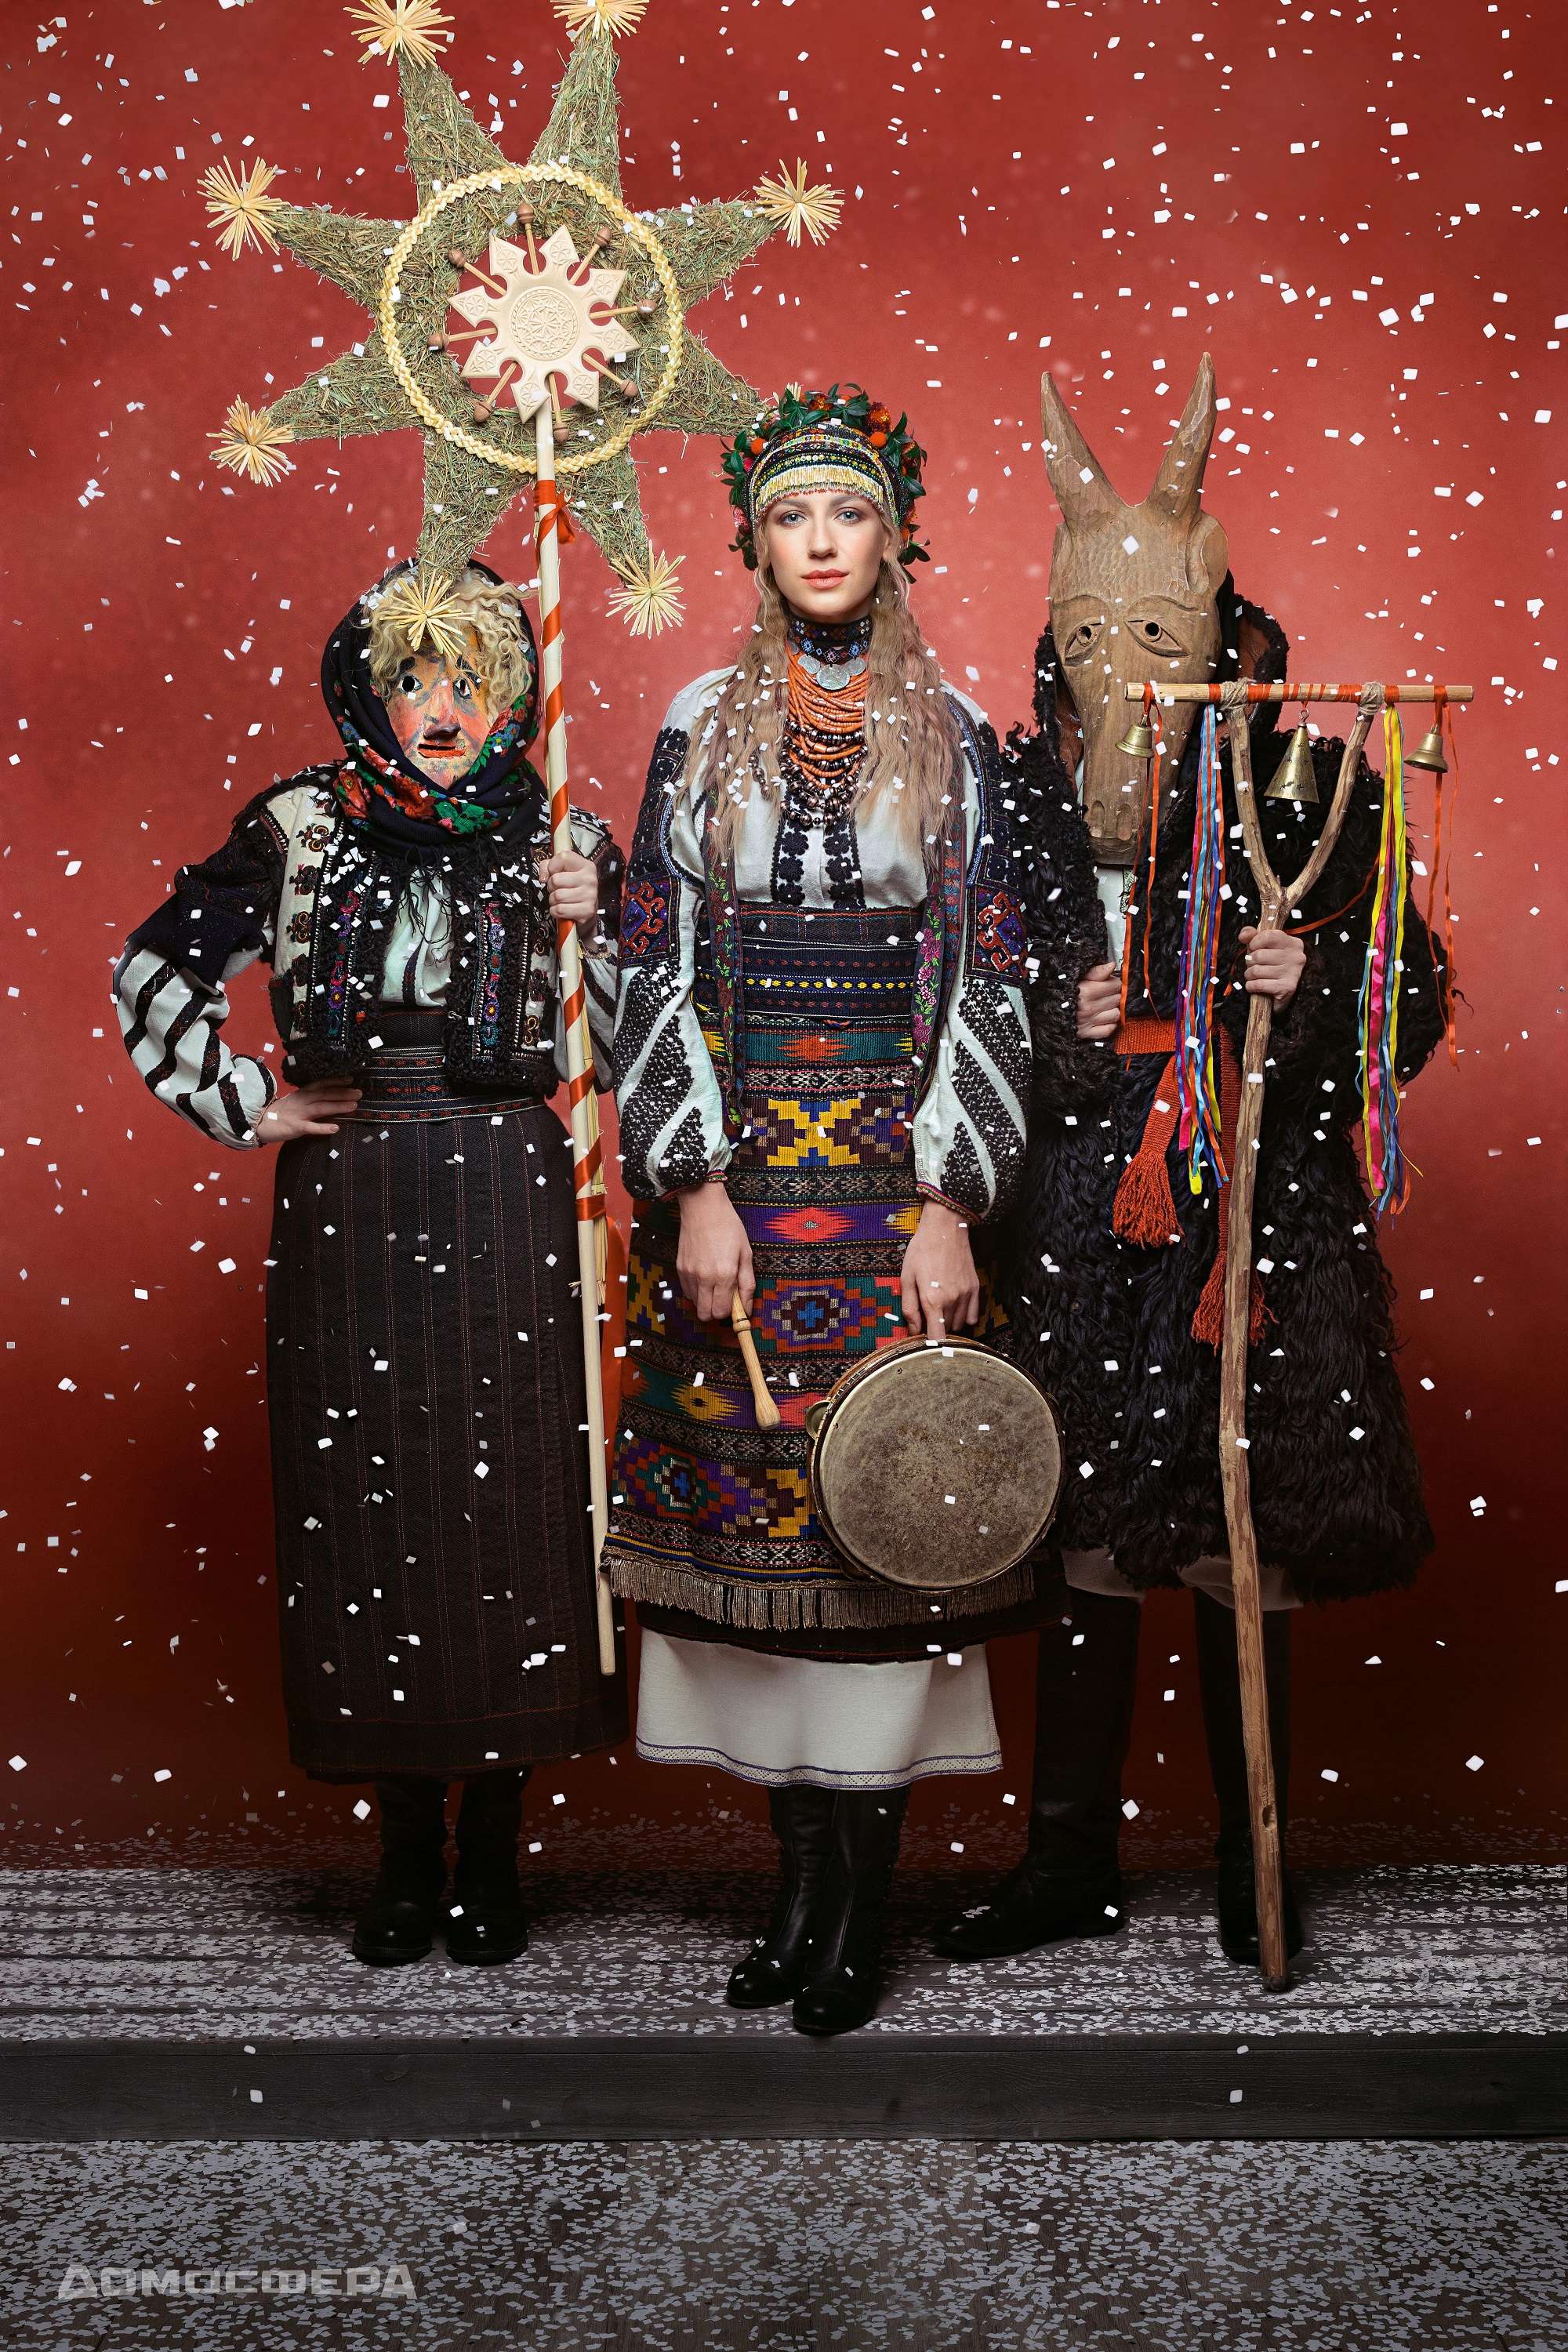 'Щирі.Свята' - звездный календарь, который воспроизводит богатство украинской нации - фото 412636